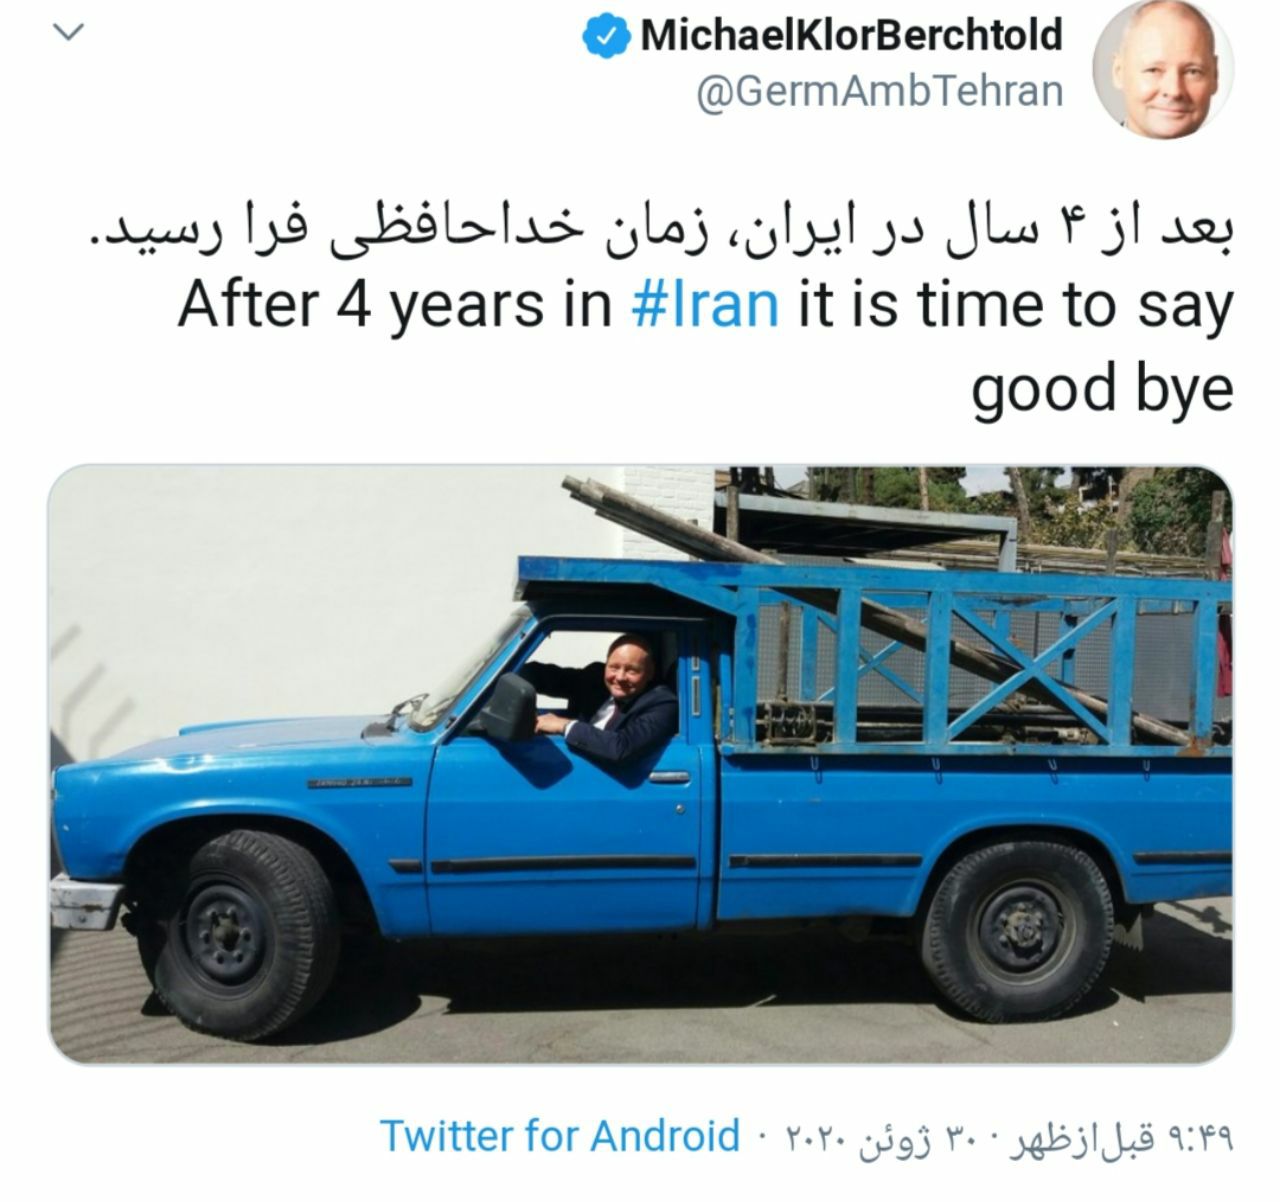 سفیر آلمان با نیسان آبی از ایران رفت / عکس